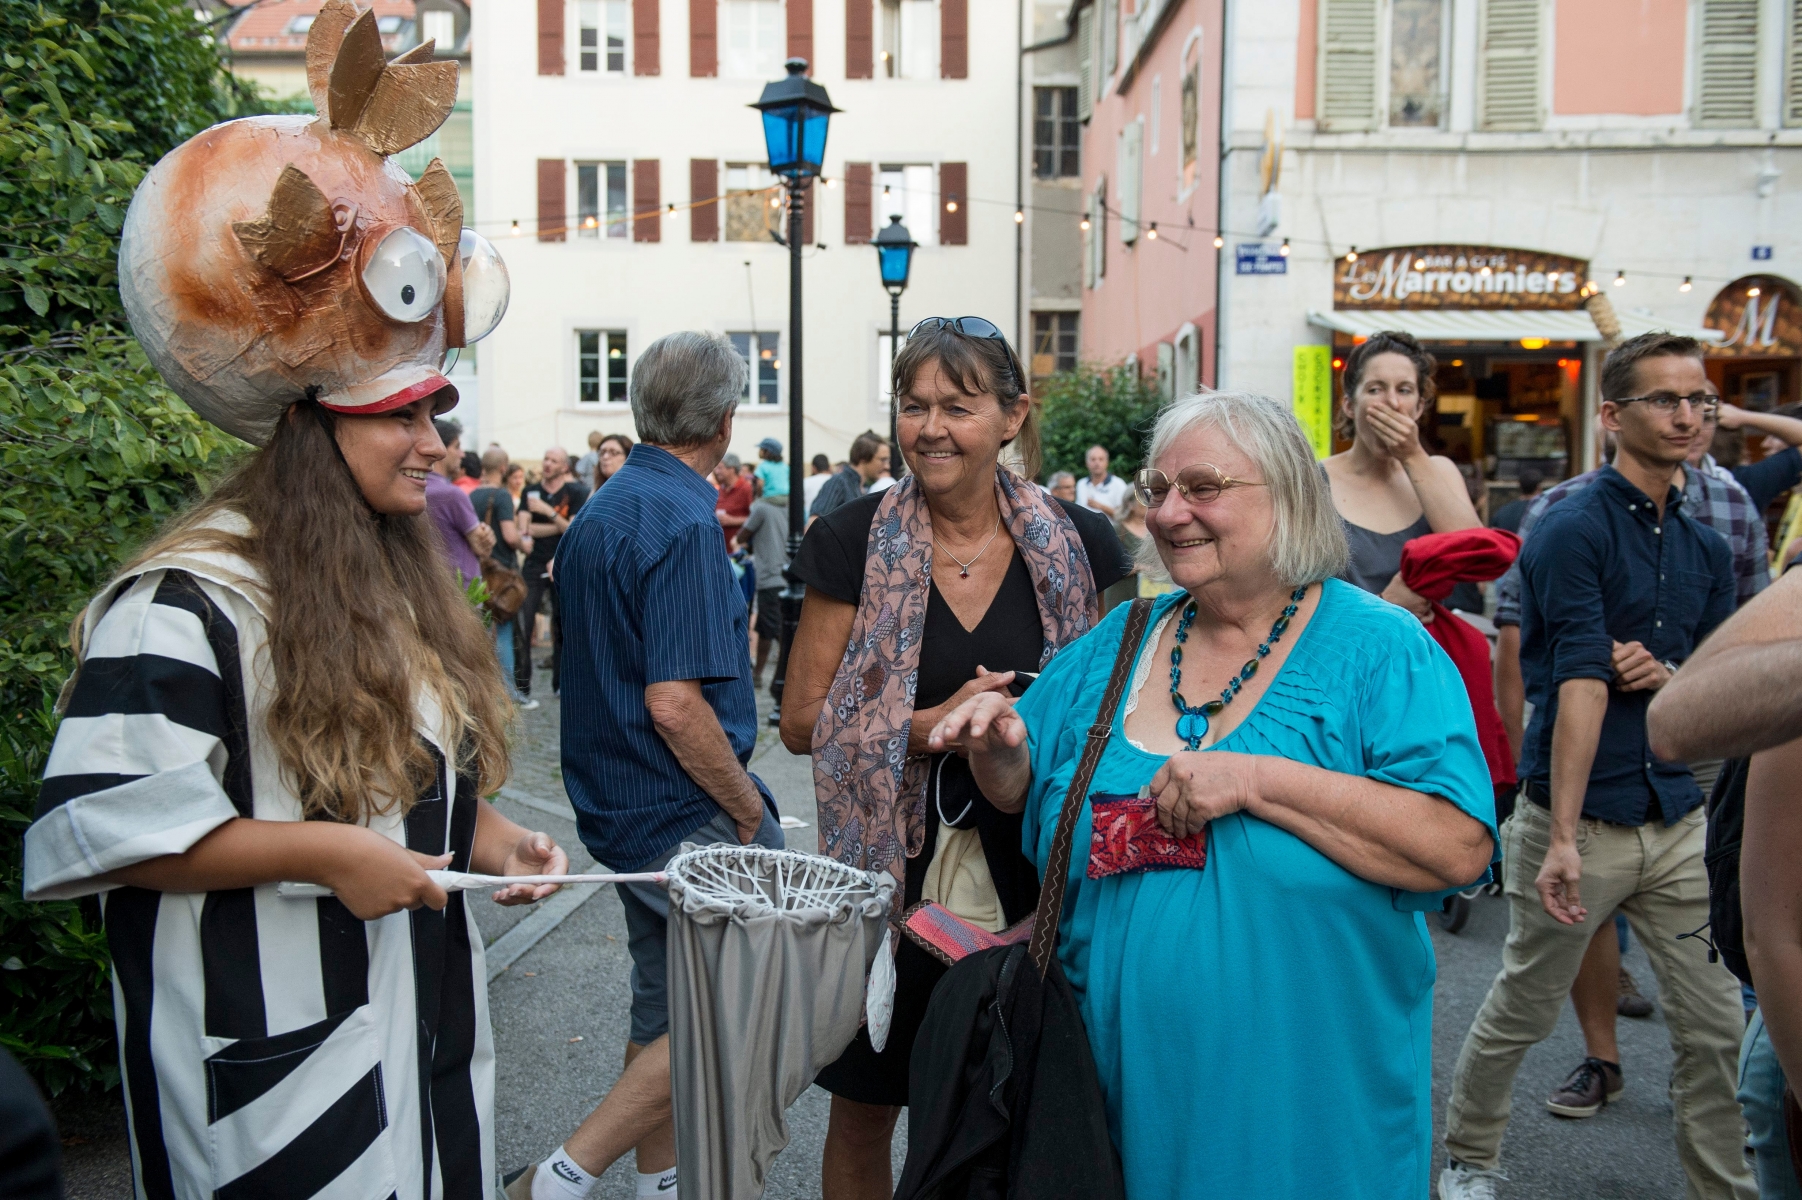 Festival de theatre de rue de la Plage des Six-Pompes

Ambiance 



La Chaux-de-Fonds, le 03.08.2015, Photo : Lucas Vuitel LA CHAUX-DE-FONDS